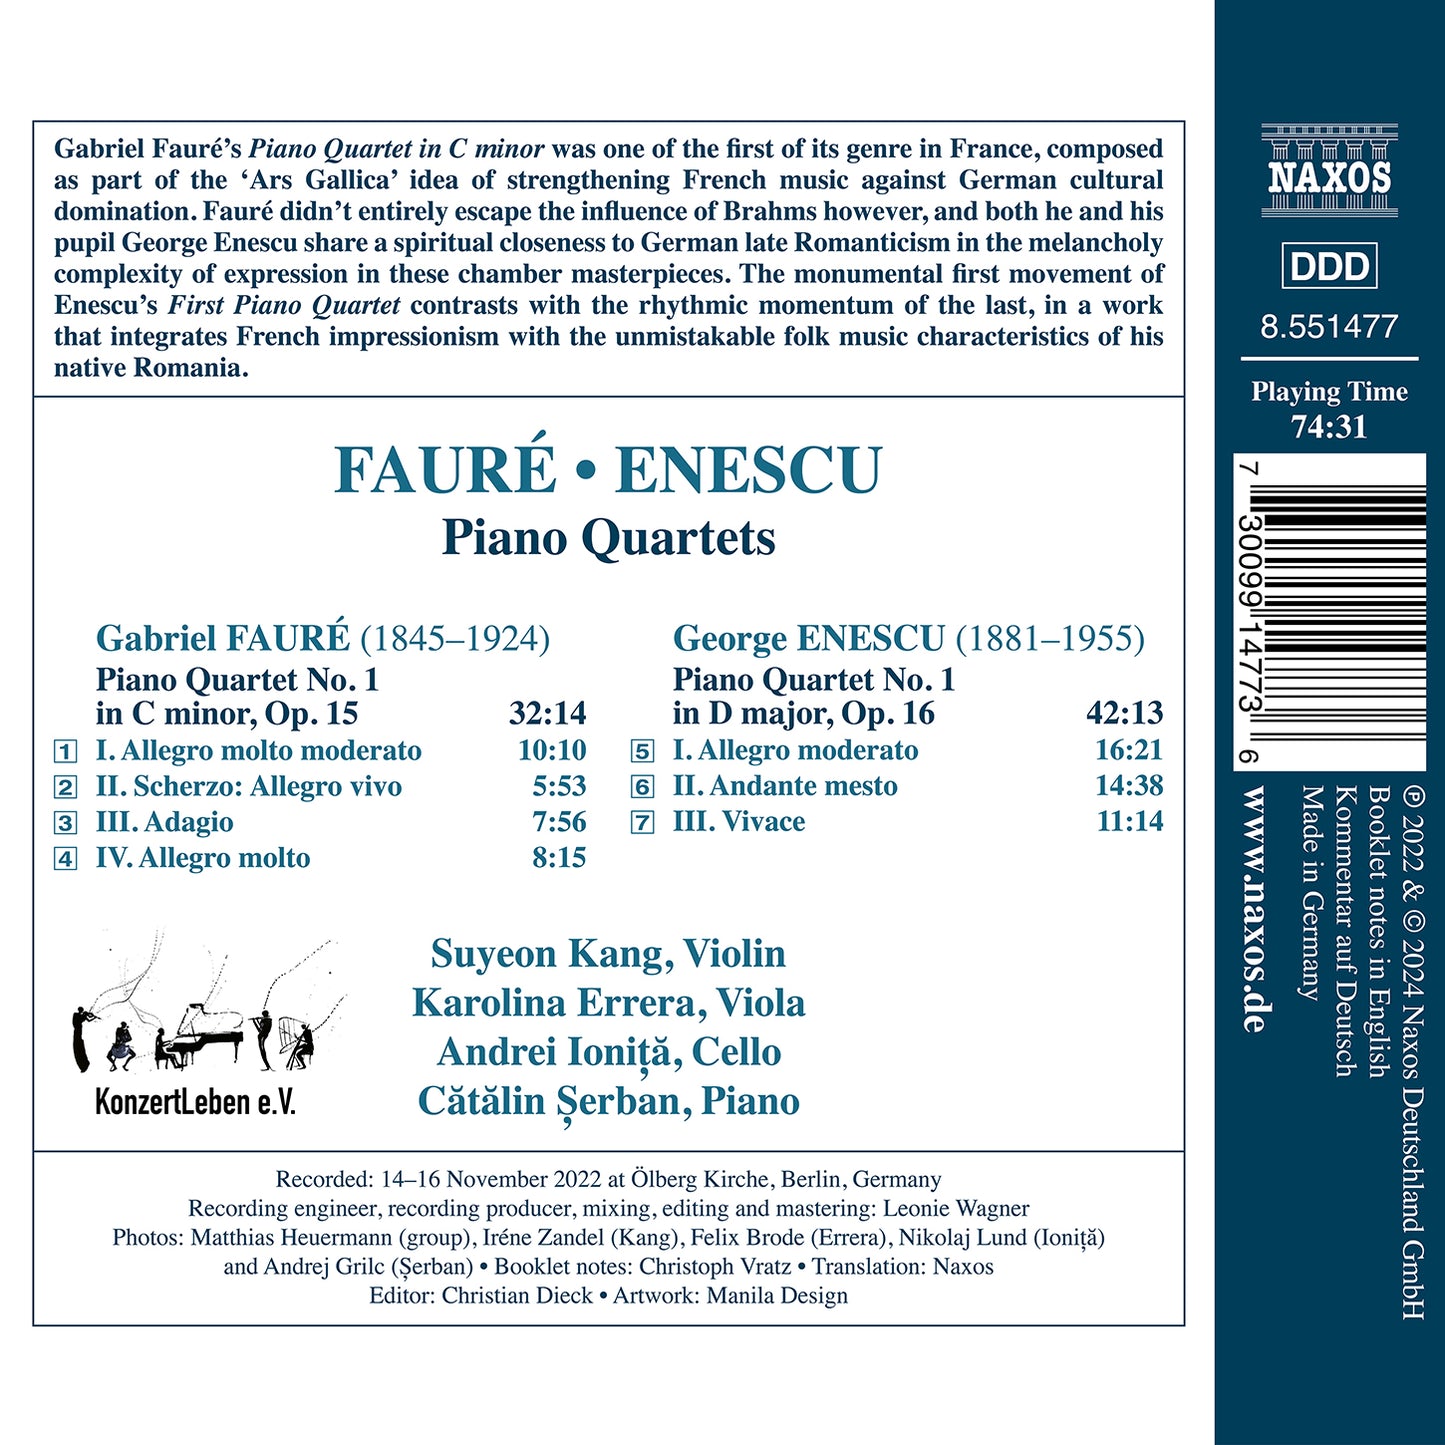 Enescu & Faure: Melodies Infinies - Piano Quartets